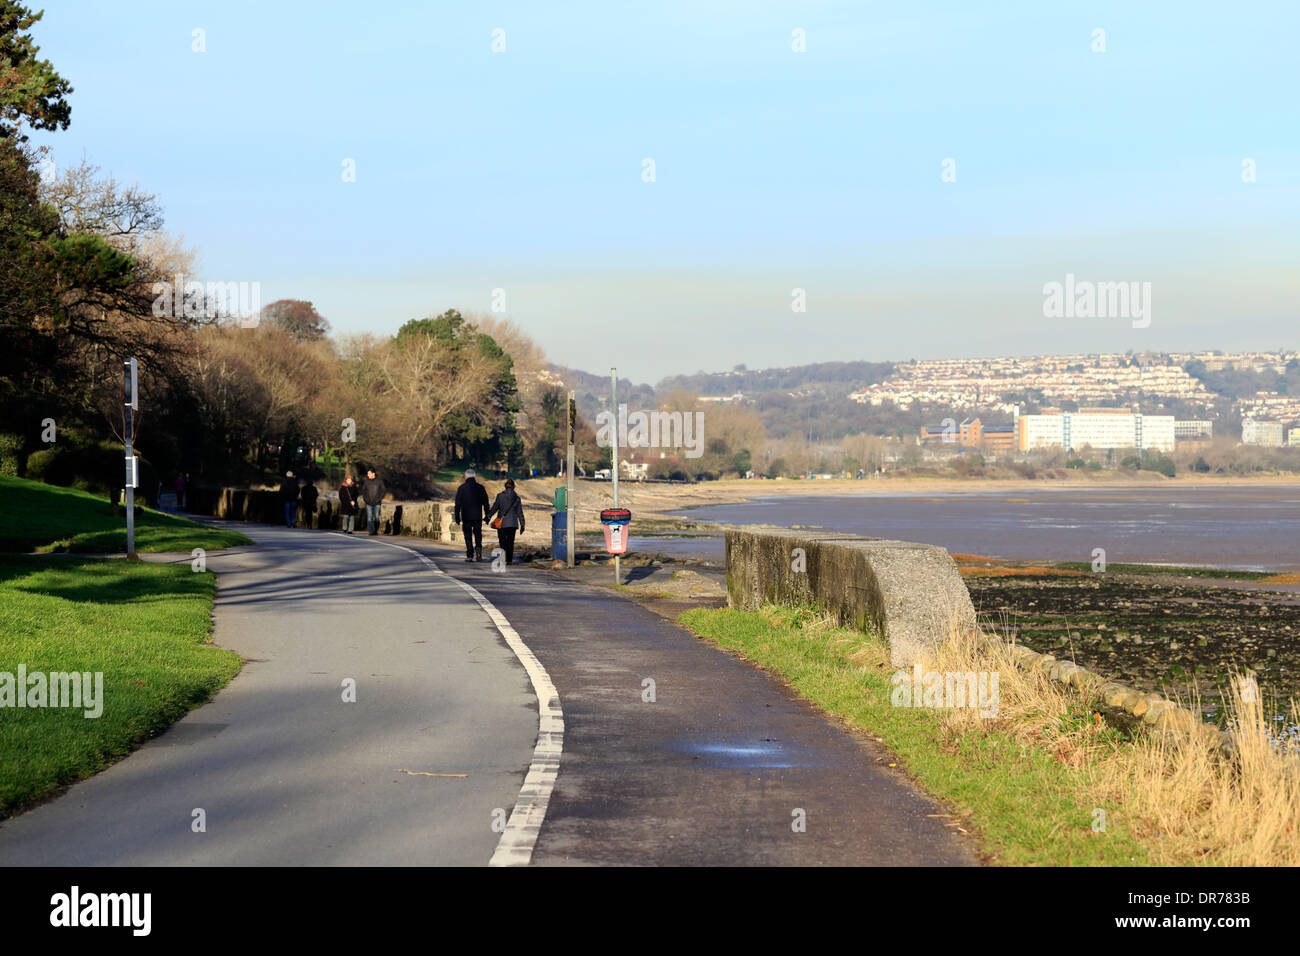 Station sentier piétonnier et piste cyclable entre la ville de Swansea au Pays de Galles du Sud et marmonne resort village sur la péninsule de Gower. Banque D'Images